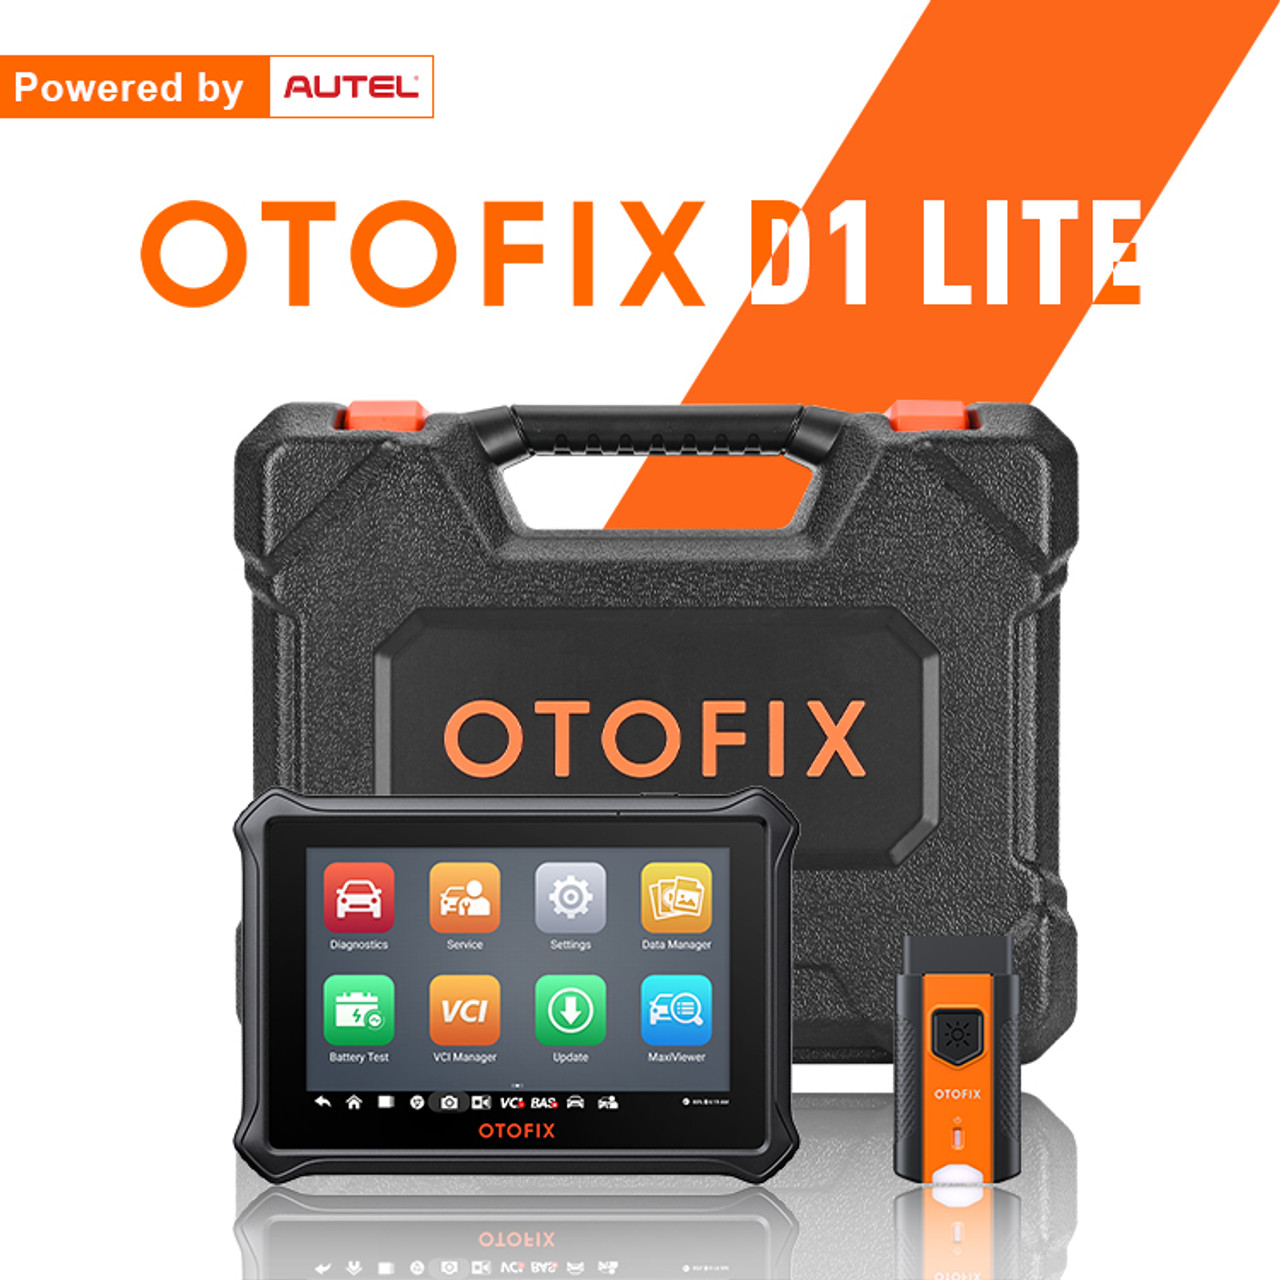 Otofix D1 lite par Autel - version Officielle Europe